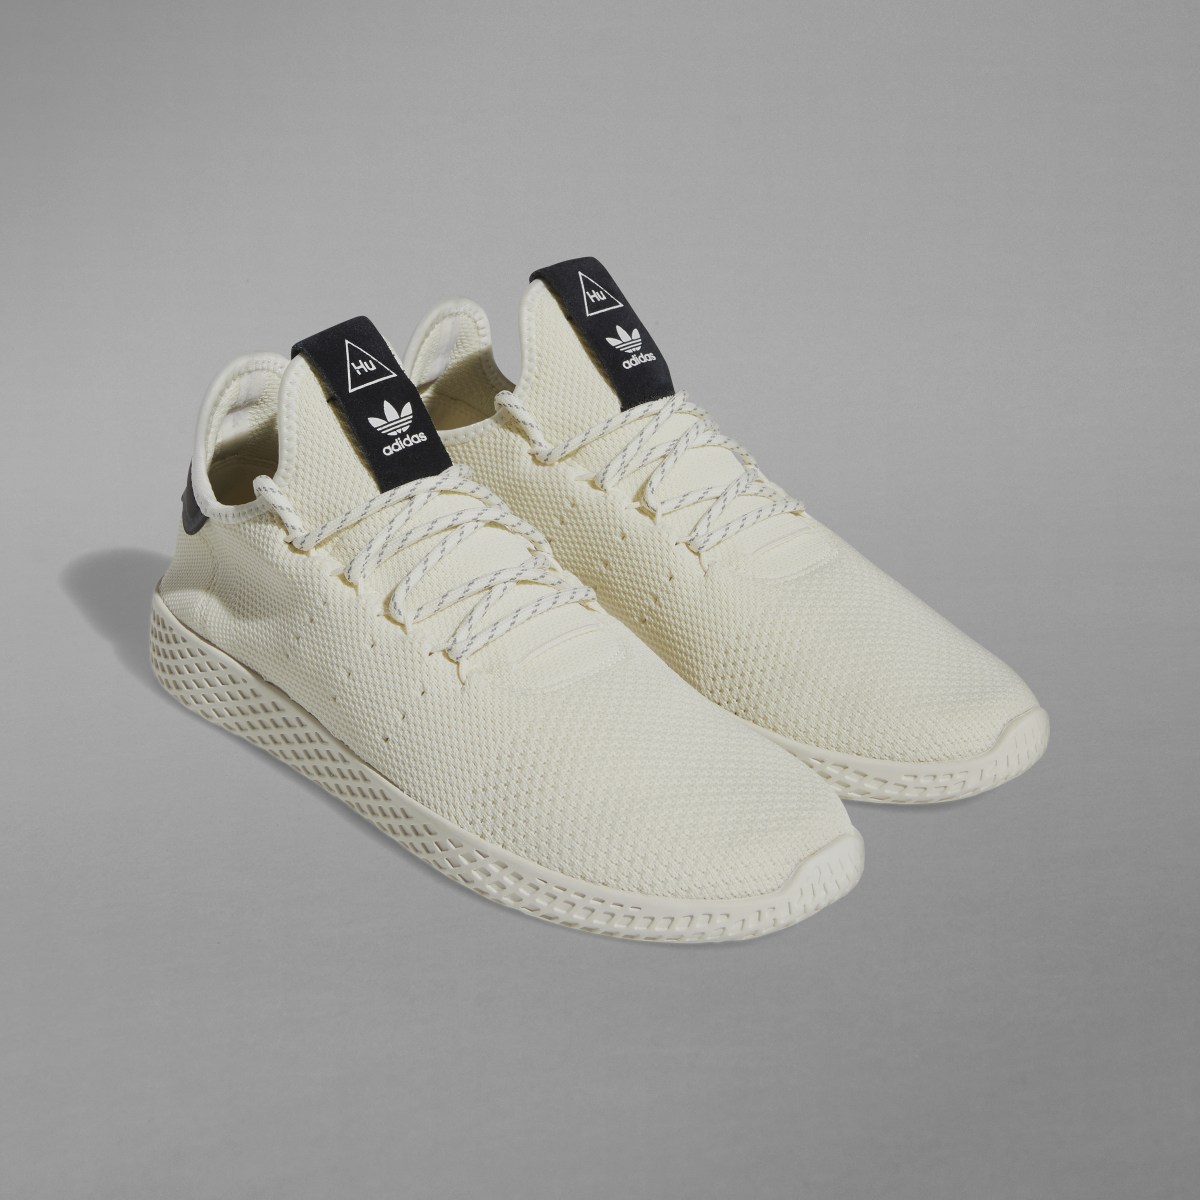 Adidas Tennis Hu Shoes. 4